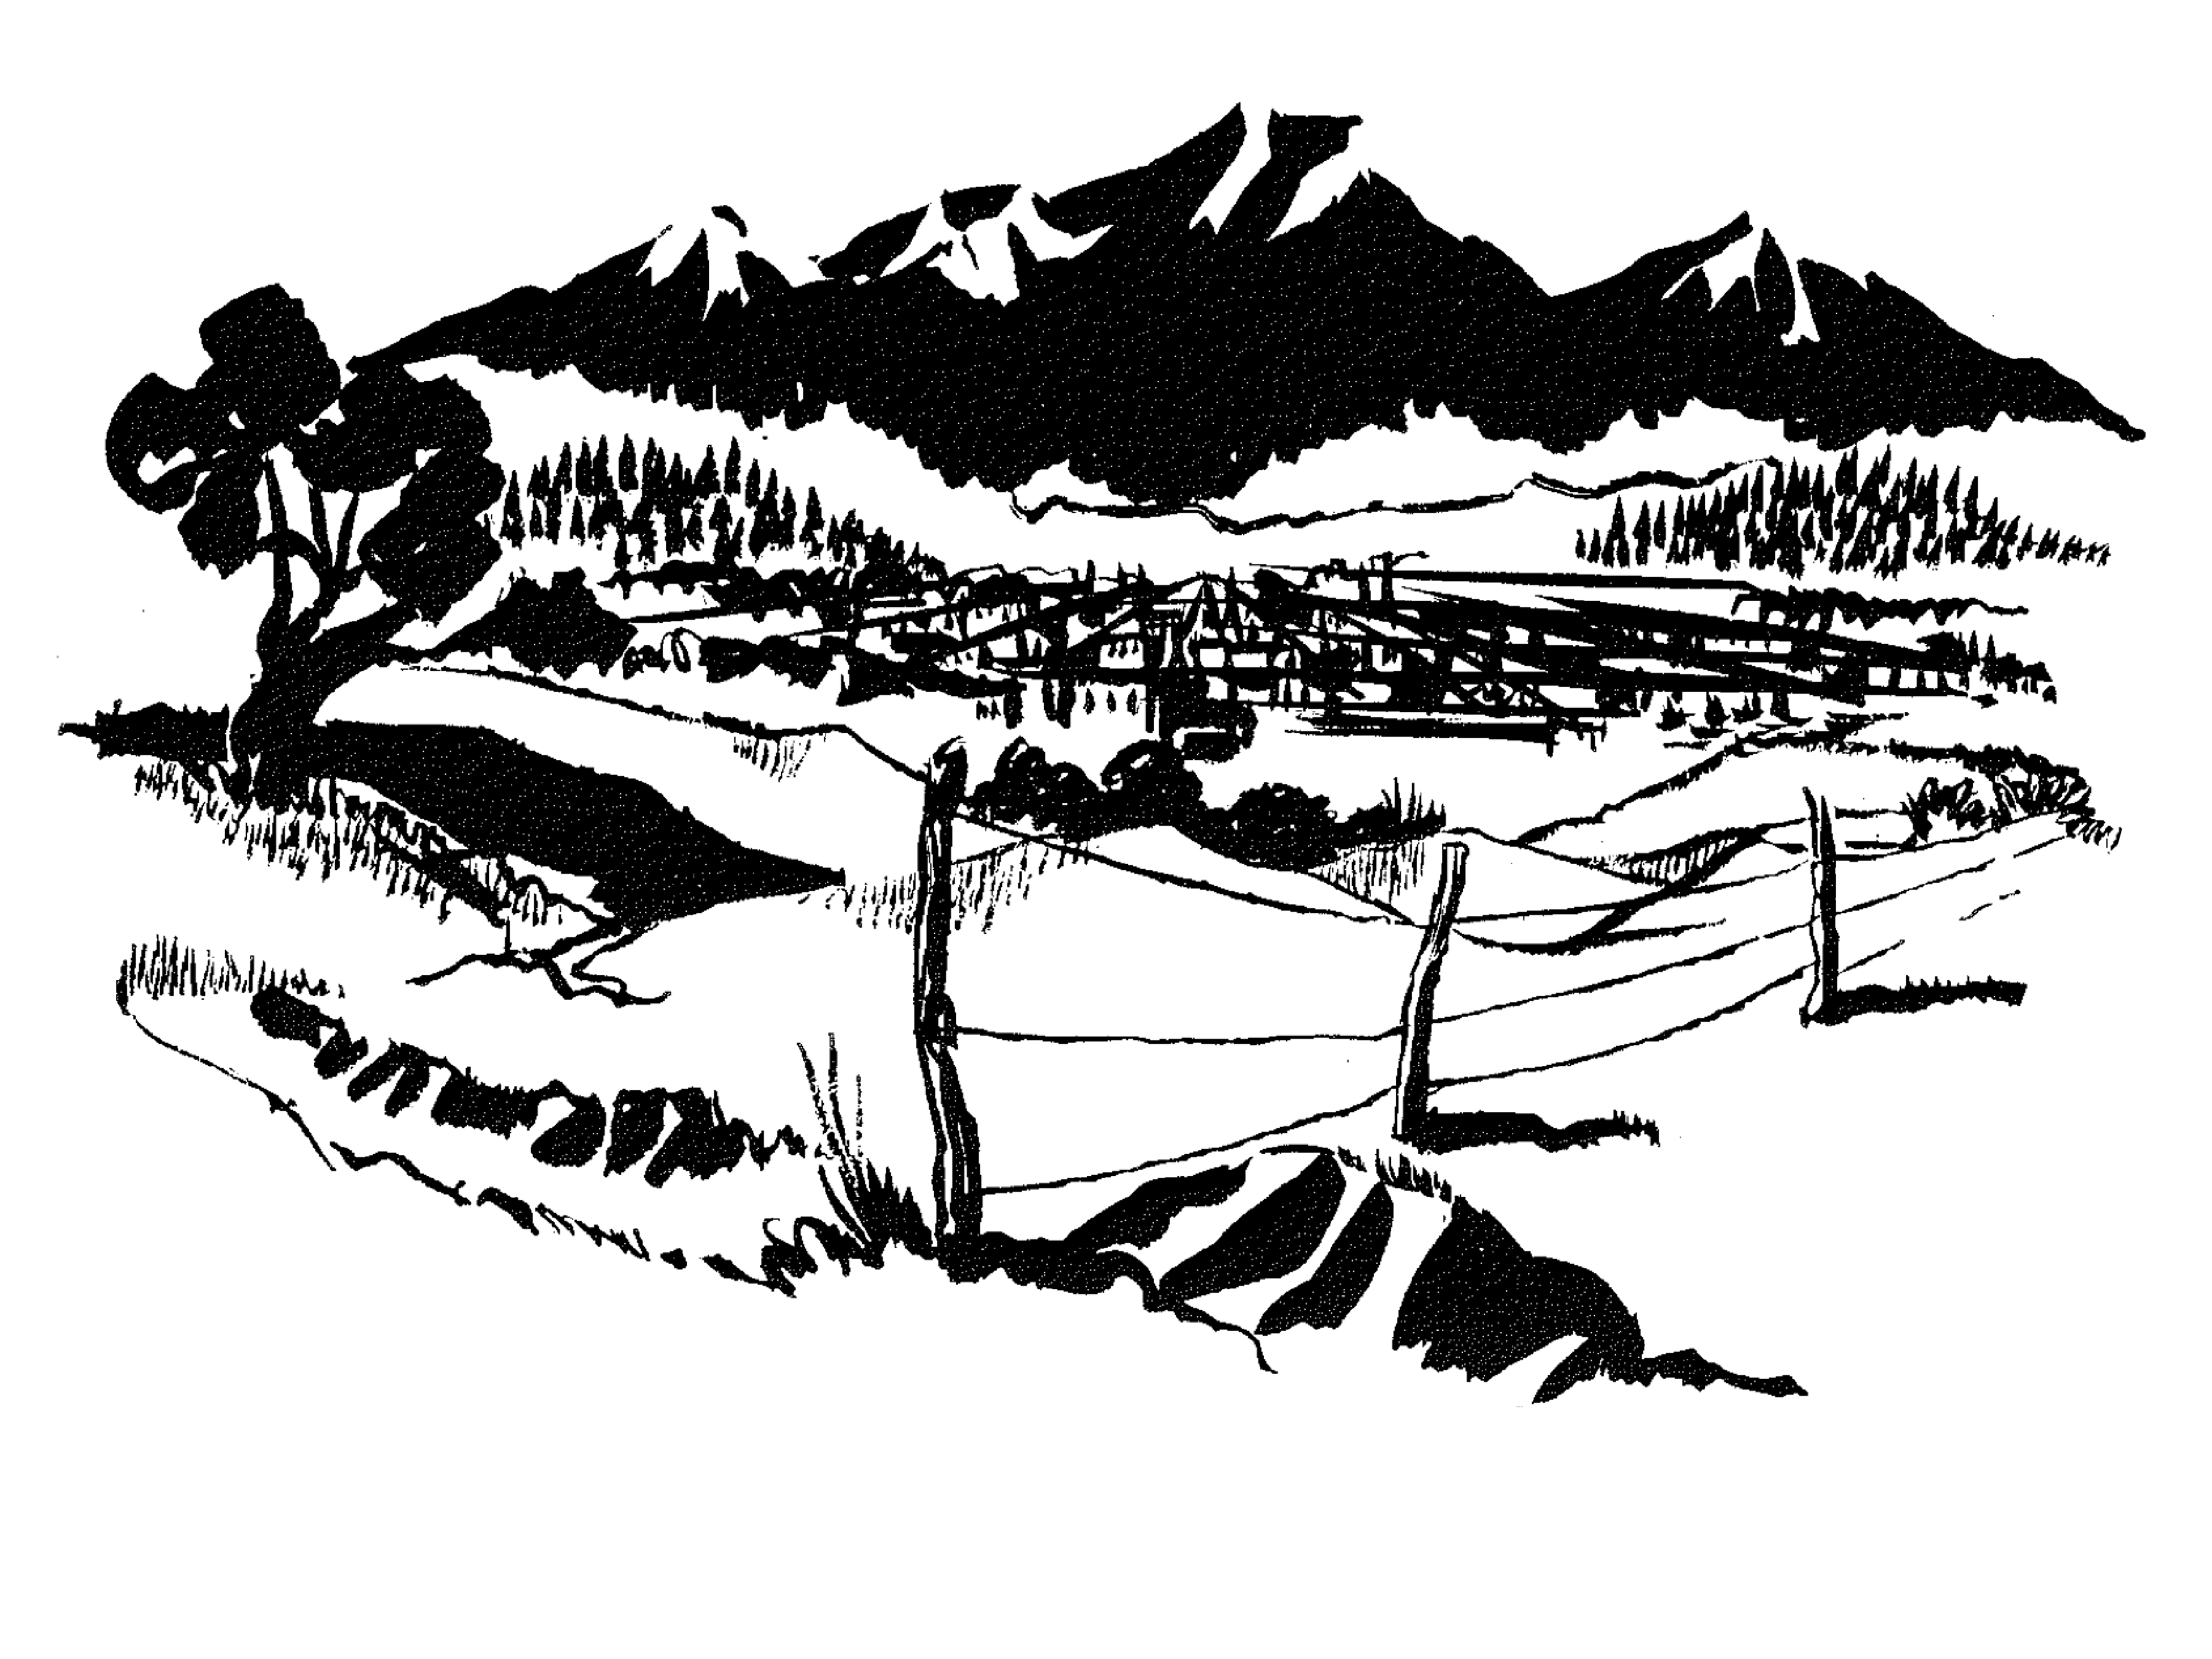 An illustration of a hillside landscape.